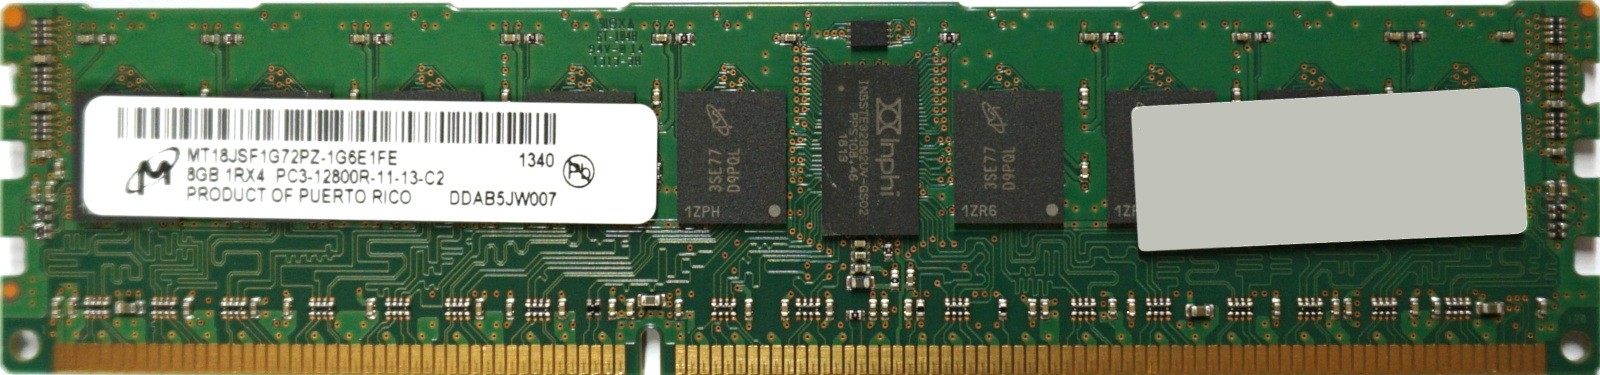 Micron - 8GB PC3-12800R (DDR3-1600Mhz, 1RX4)